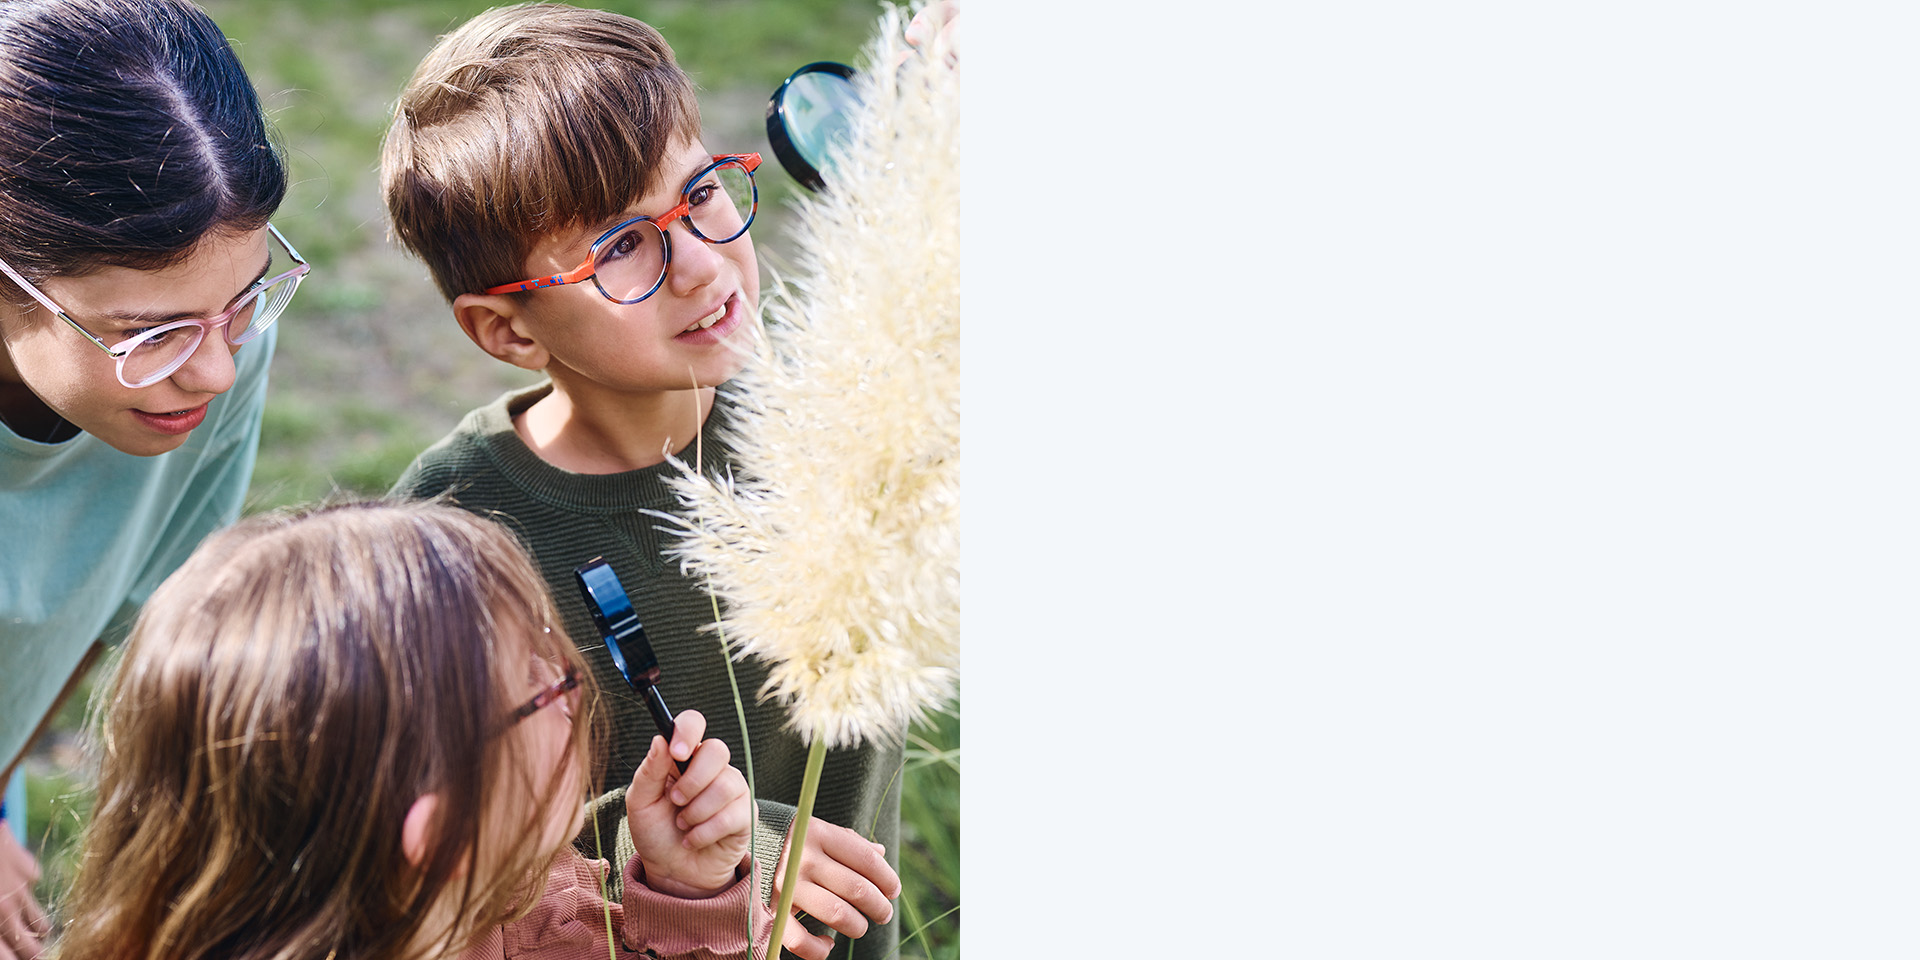 자이스 마이오케어 렌즈를 착용한 2명의 소녀와 1명의 소년. 아이들이 식물을 보고 있는데, 3명 중 2명은 돋보기를 통해 식물을 보고 있다.